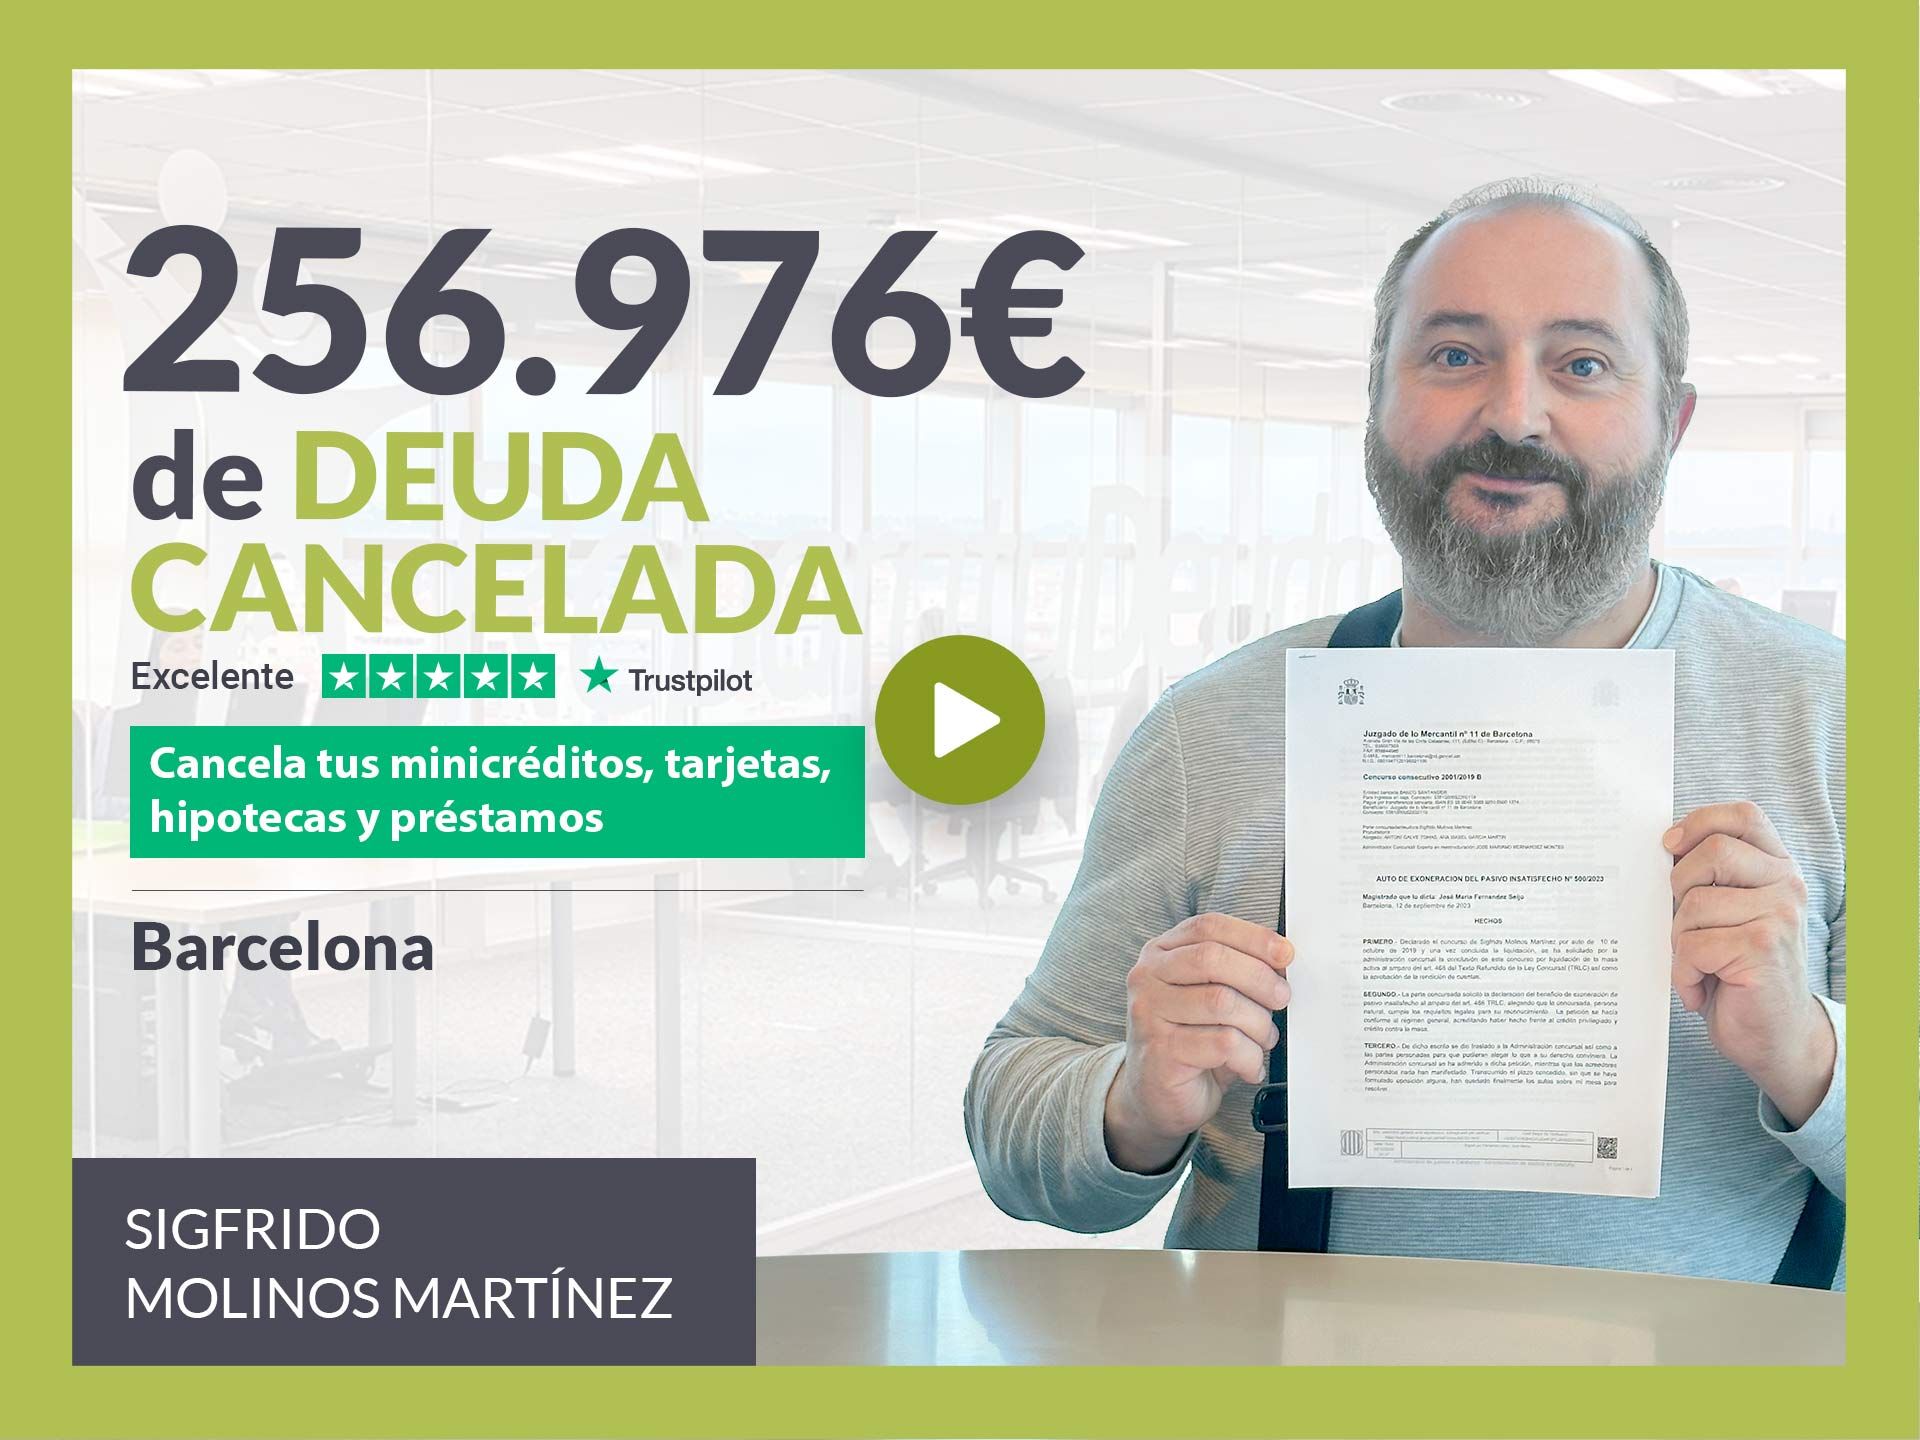 Repara tu Deuda Abogados cancela 256.976? en Barcelona (Catalunya) con la Ley de Segunda Oportunidad